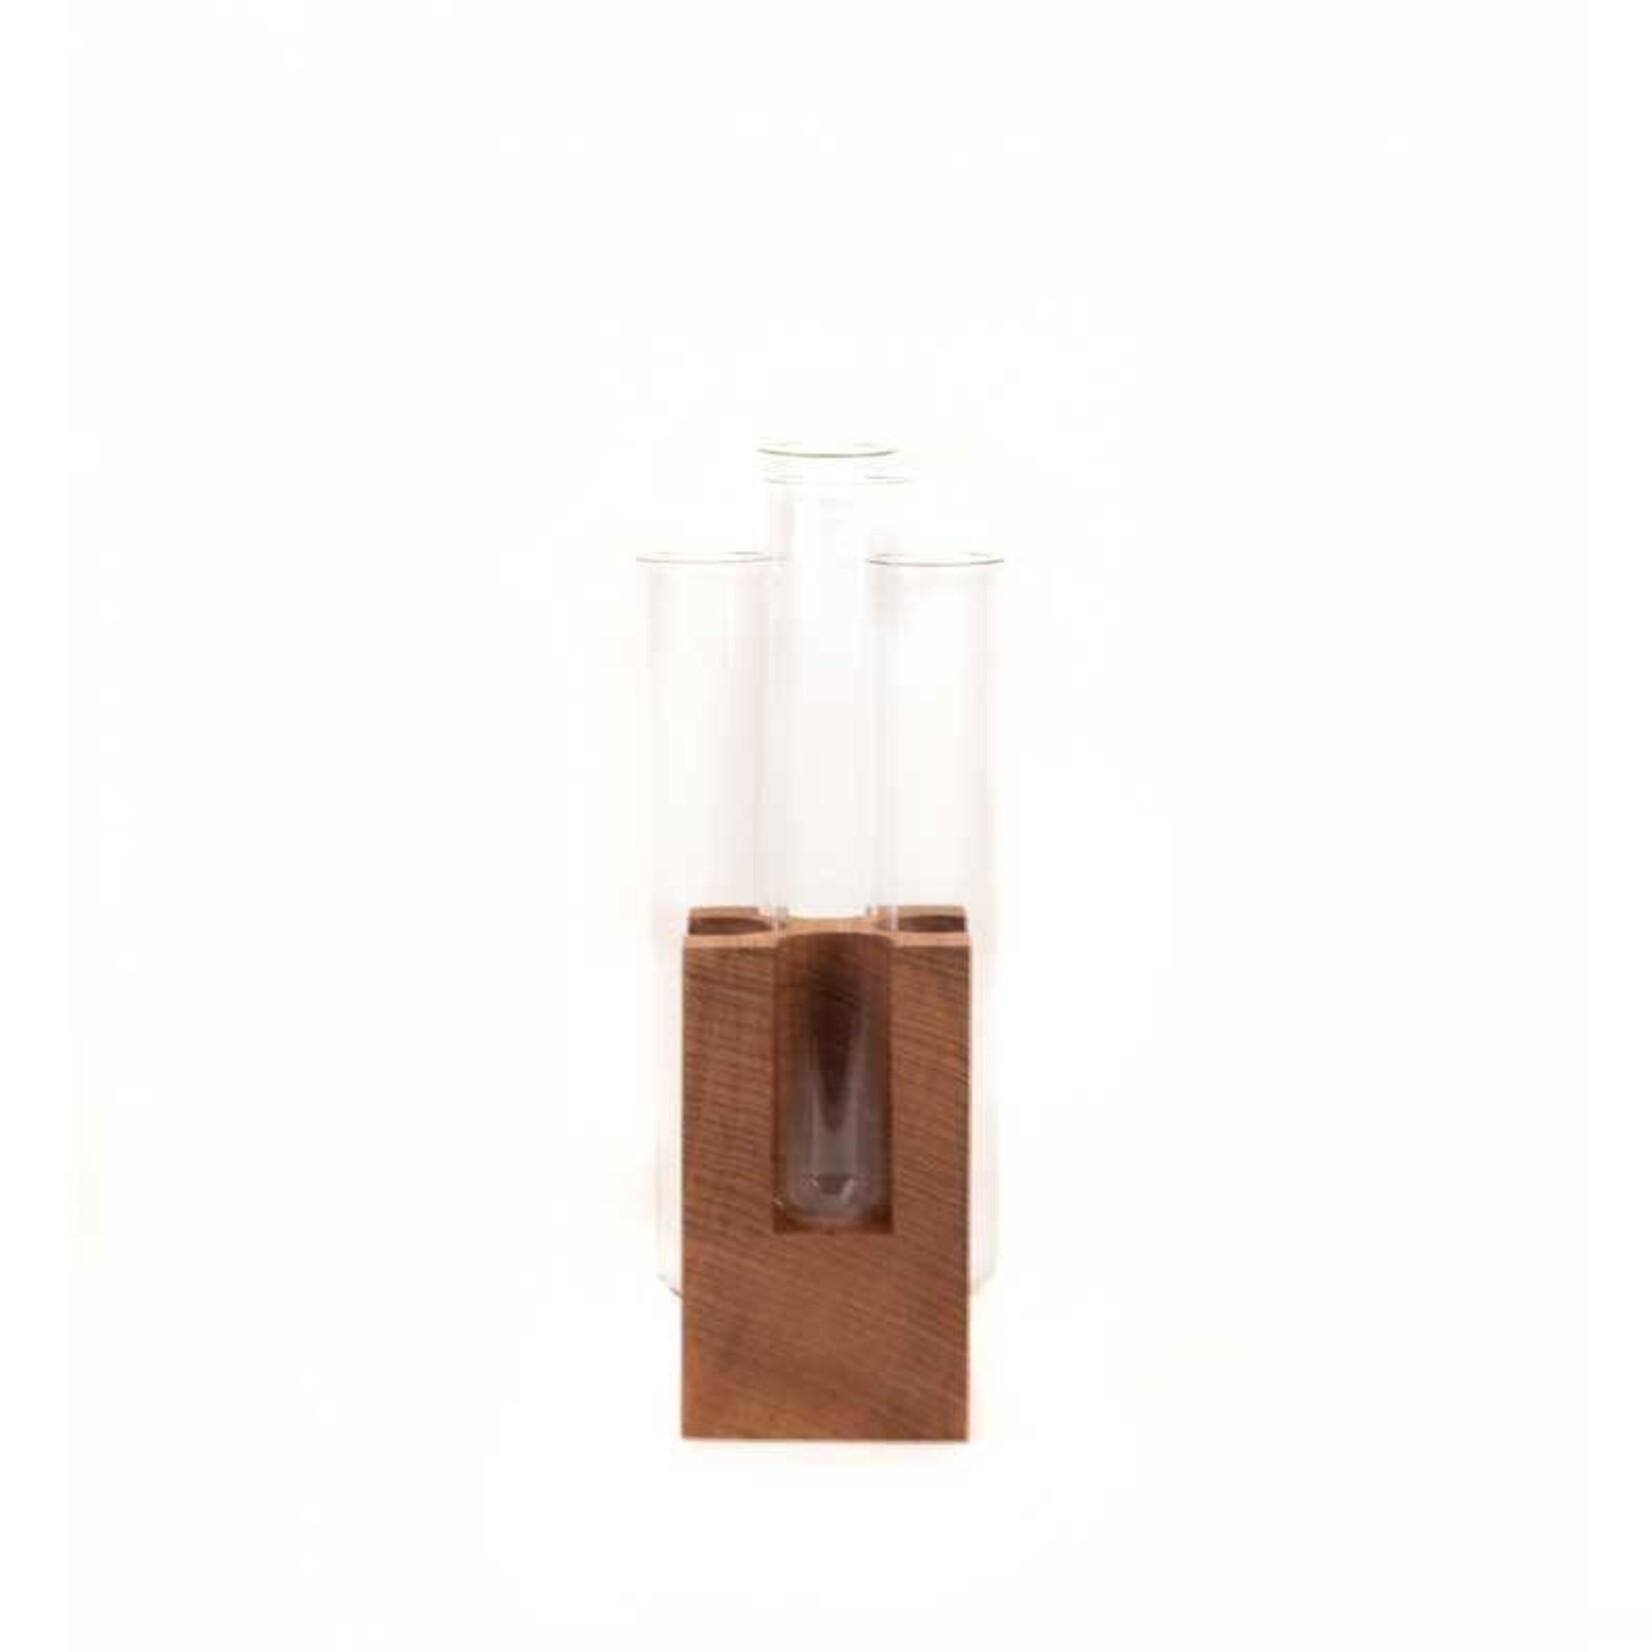 FIGR1 figr1 block4 - jatoba testtube vase